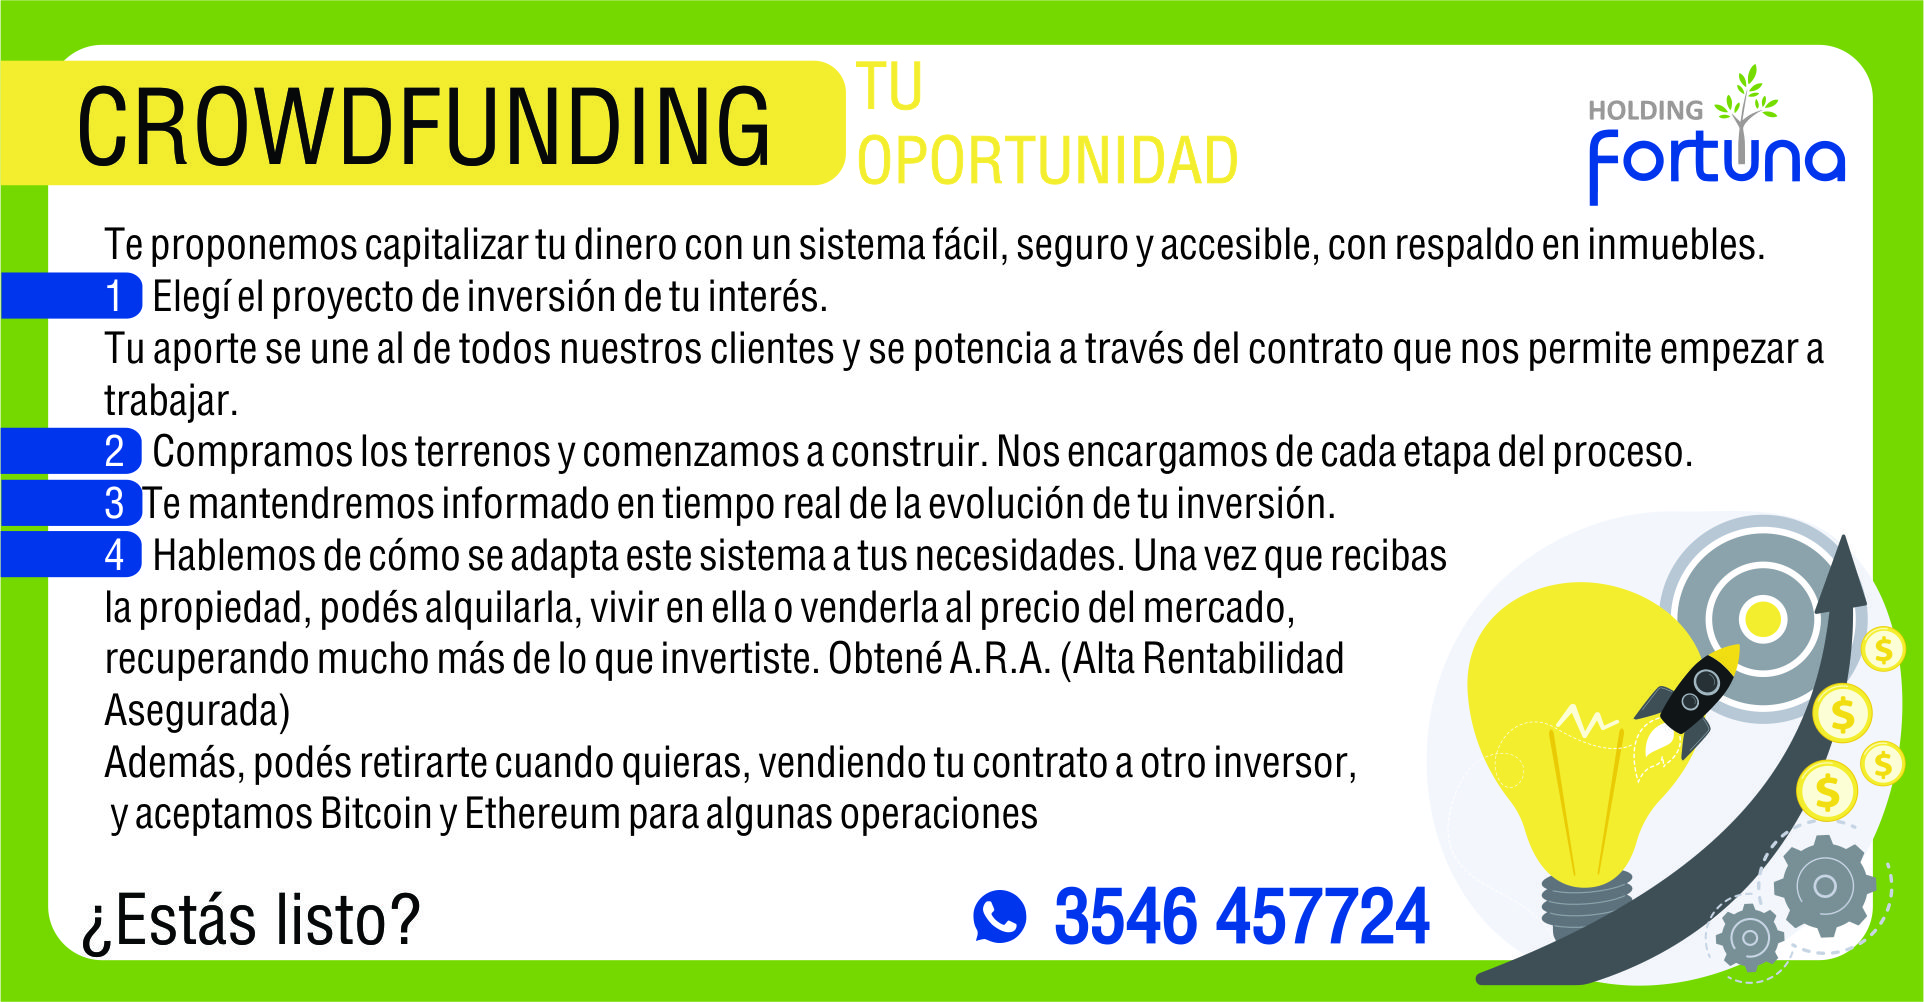 Crowdfunding-CrowdfundingInmobiliario-FortunaInversiones-Inversiones-Rentabilidad-Criptomonedas-HoldingFortuna-Novedad